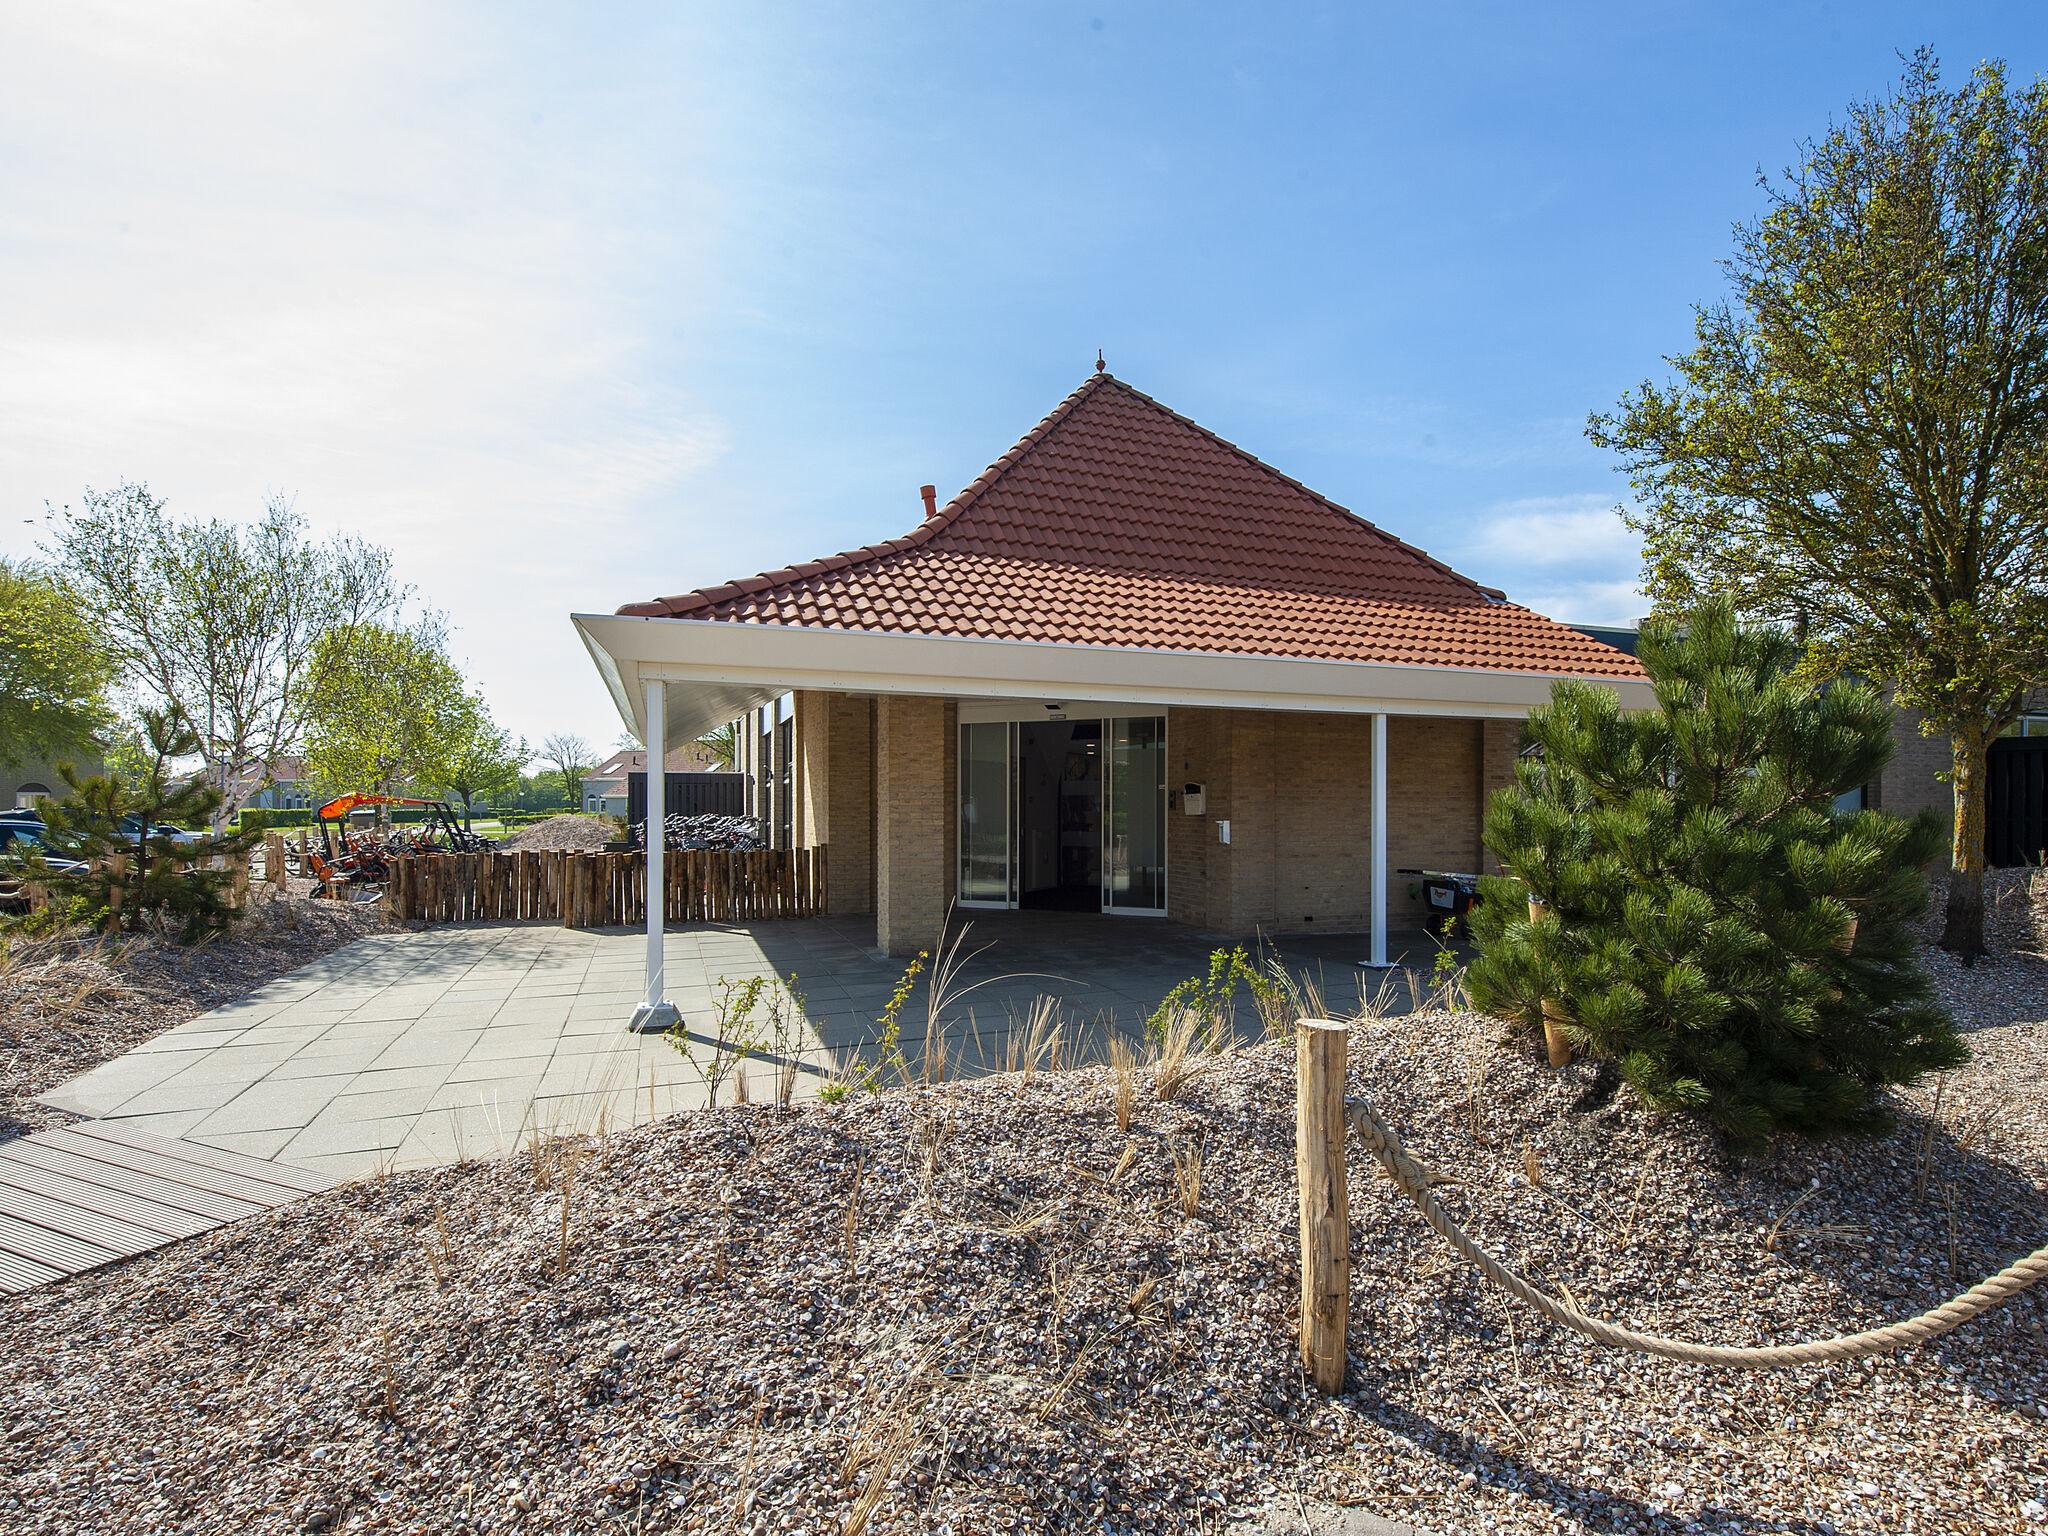 Gerestylde bungalow op vakantiepark Soeten Haert, 500m van het strand